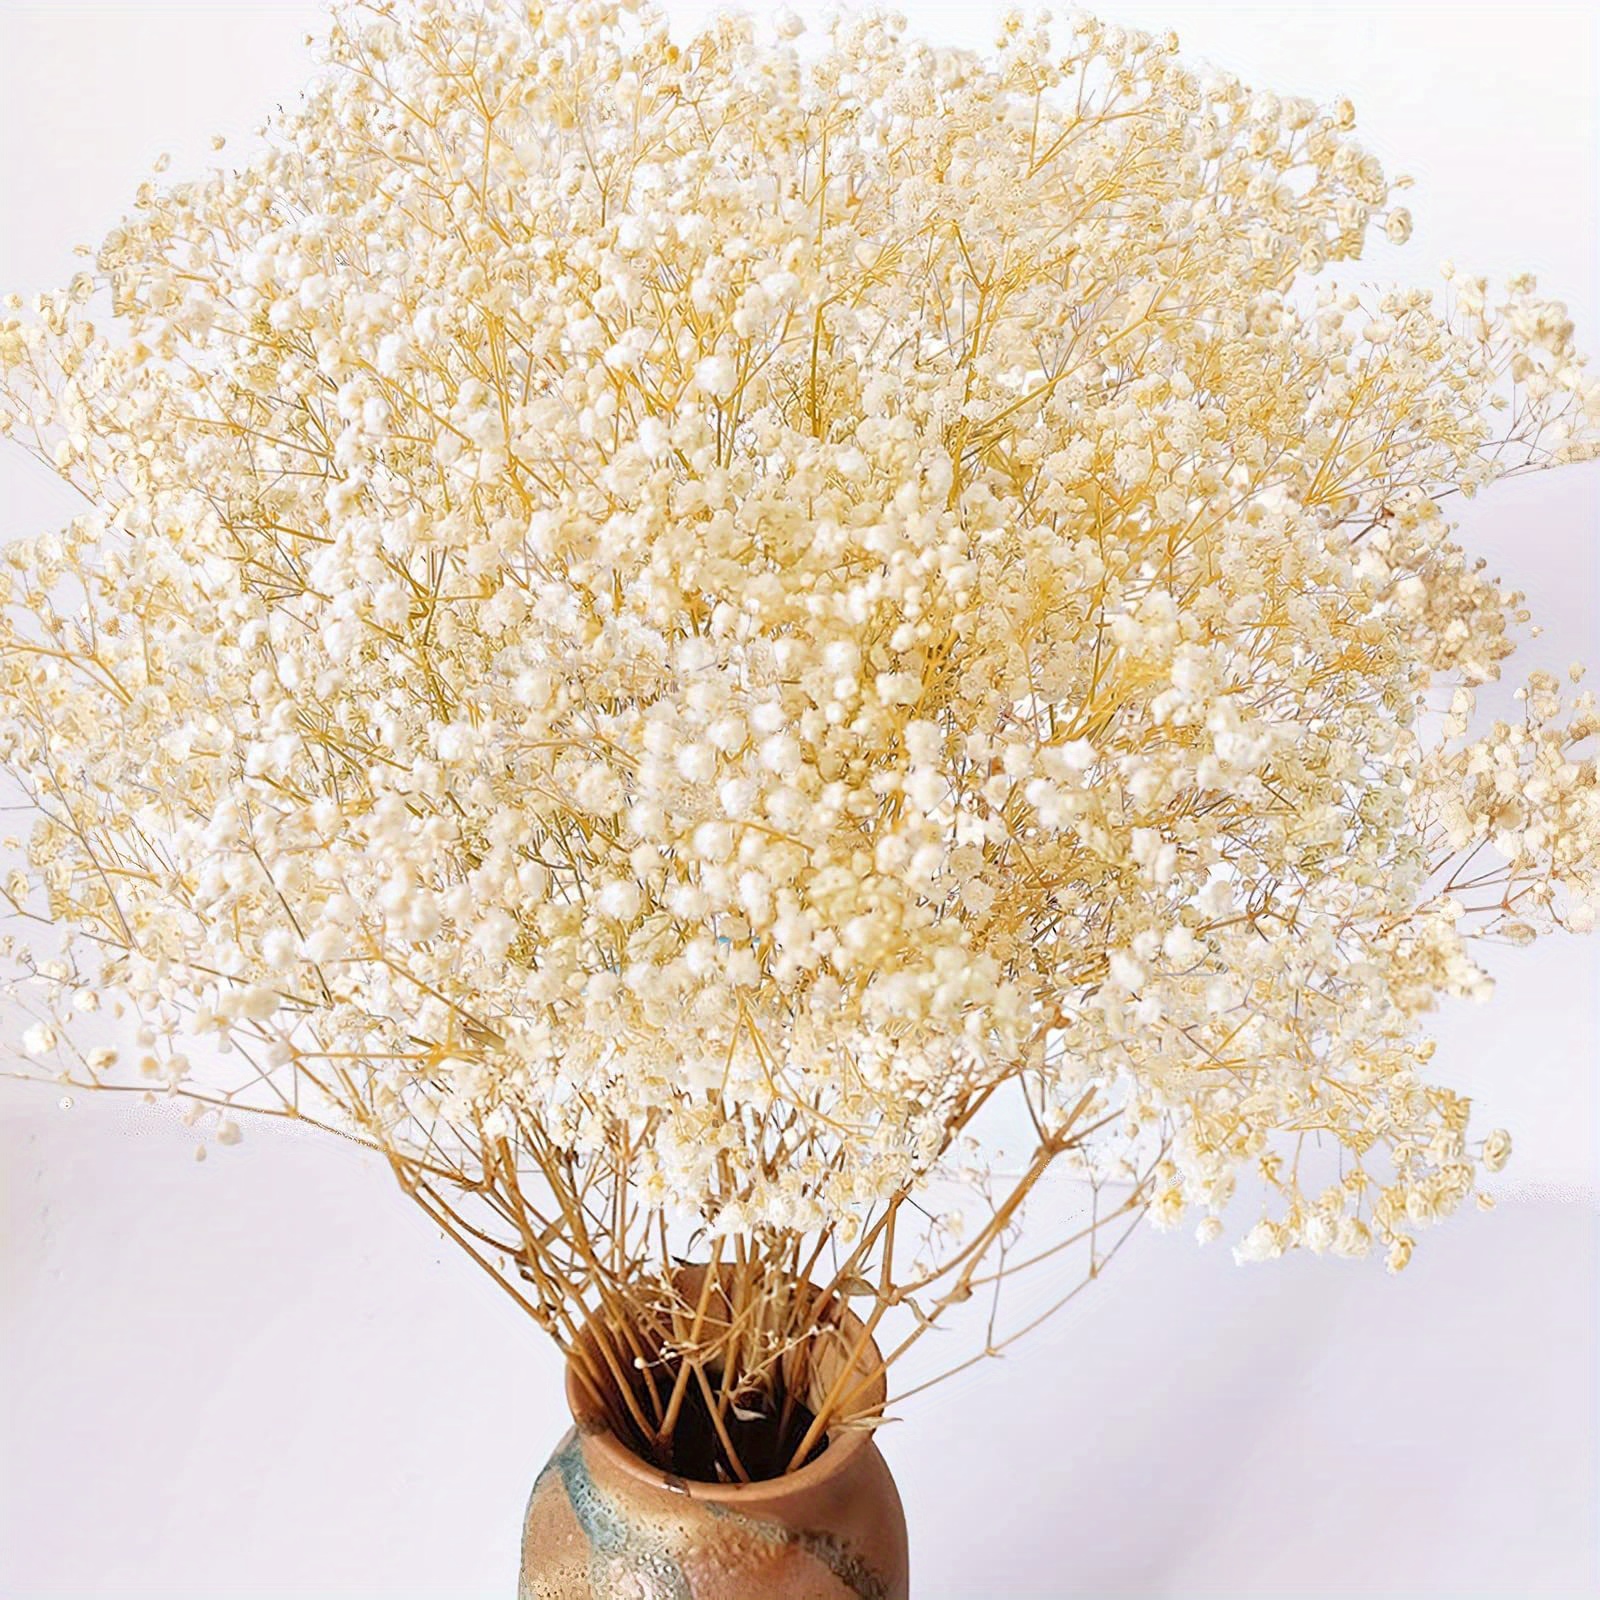 120g/450g fiori stabilizzati Gypsophila fresca naturale mazzi di fiori  secchi per l'alito del bambino regalo per la decorazione di nozze  decorazioni per la casa